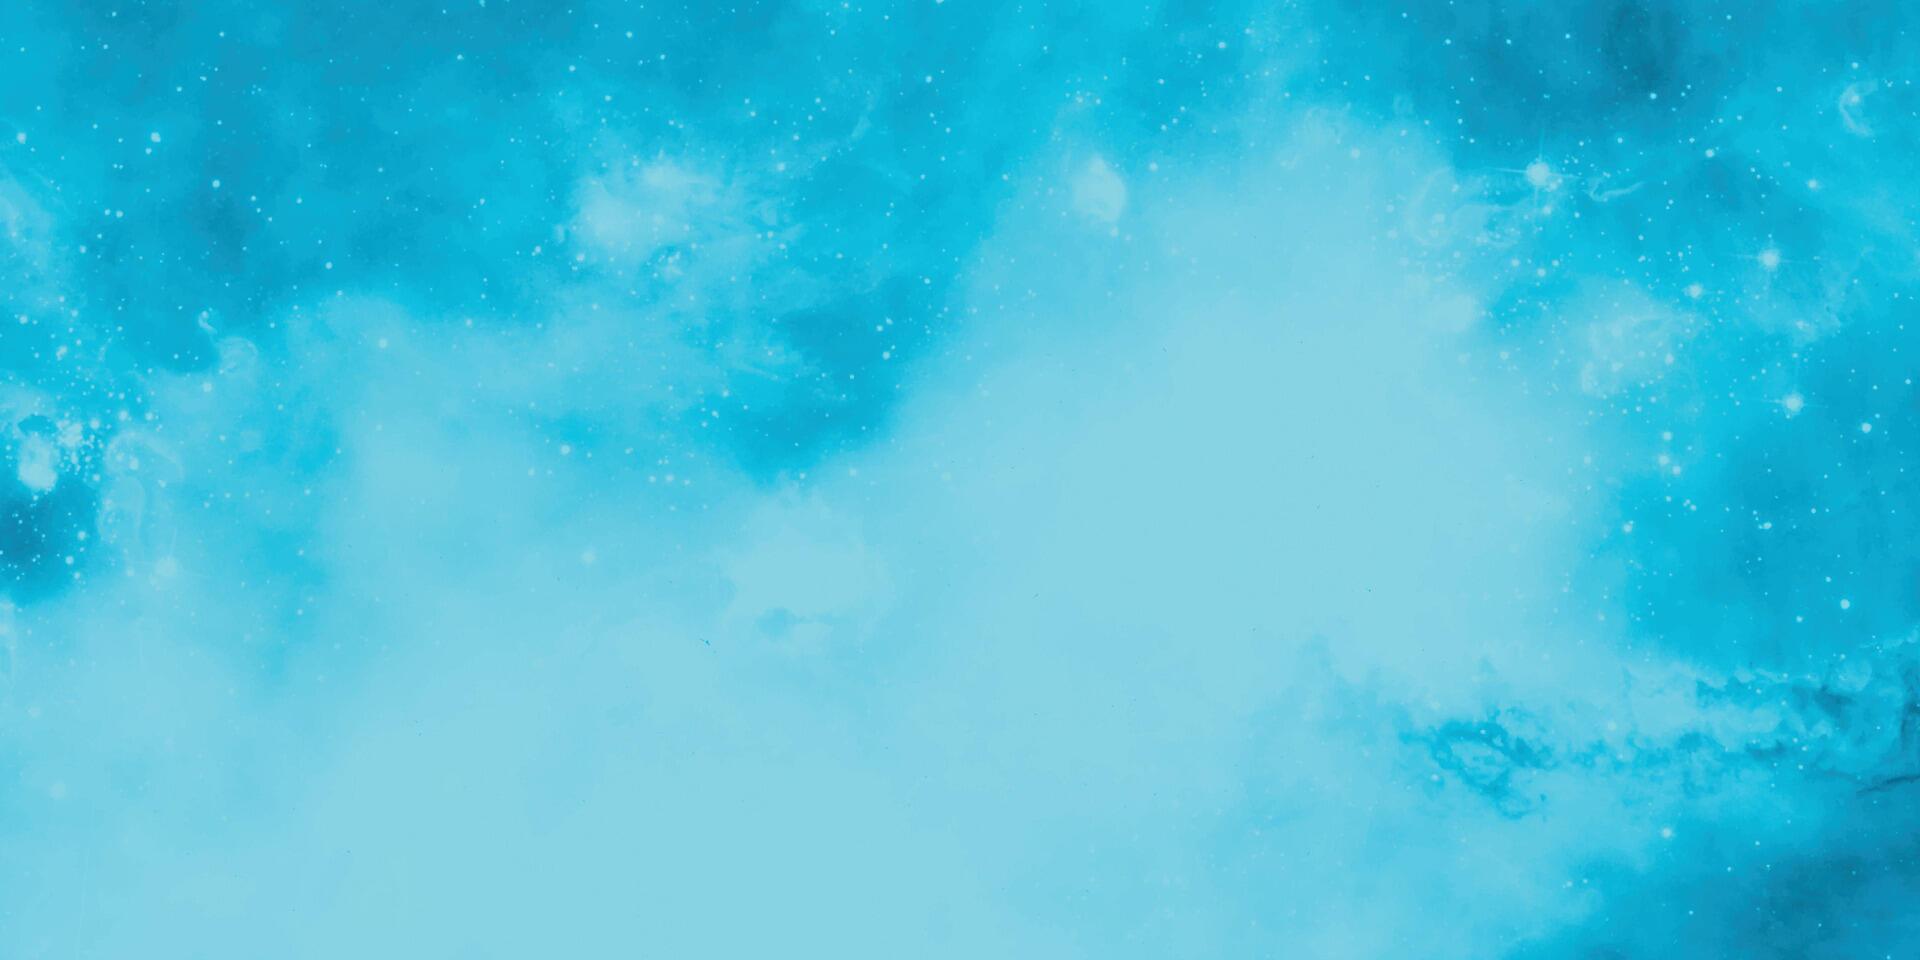 blauw lucht ruimte waterverf achtergrond. heelal, universum, blauw waterverf achtergrond. waterverf blauw lucht kleur achtergrond met wolk en sprankelend vector